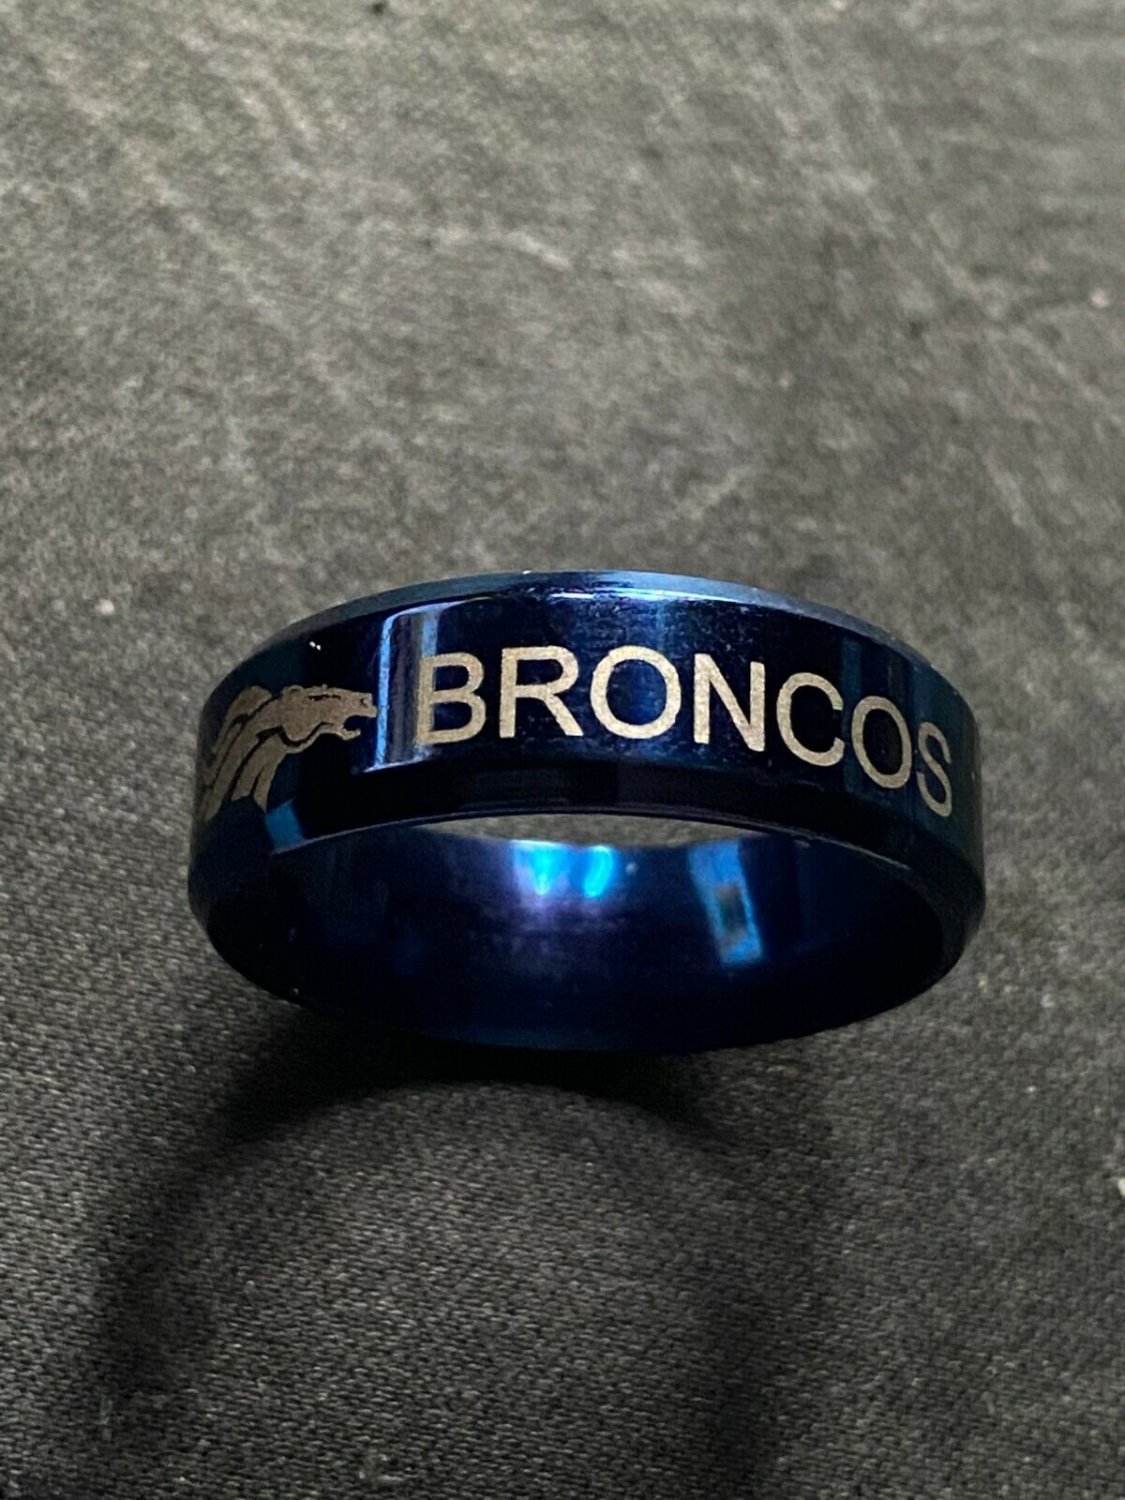 Denver Broncos titanium ring size 6